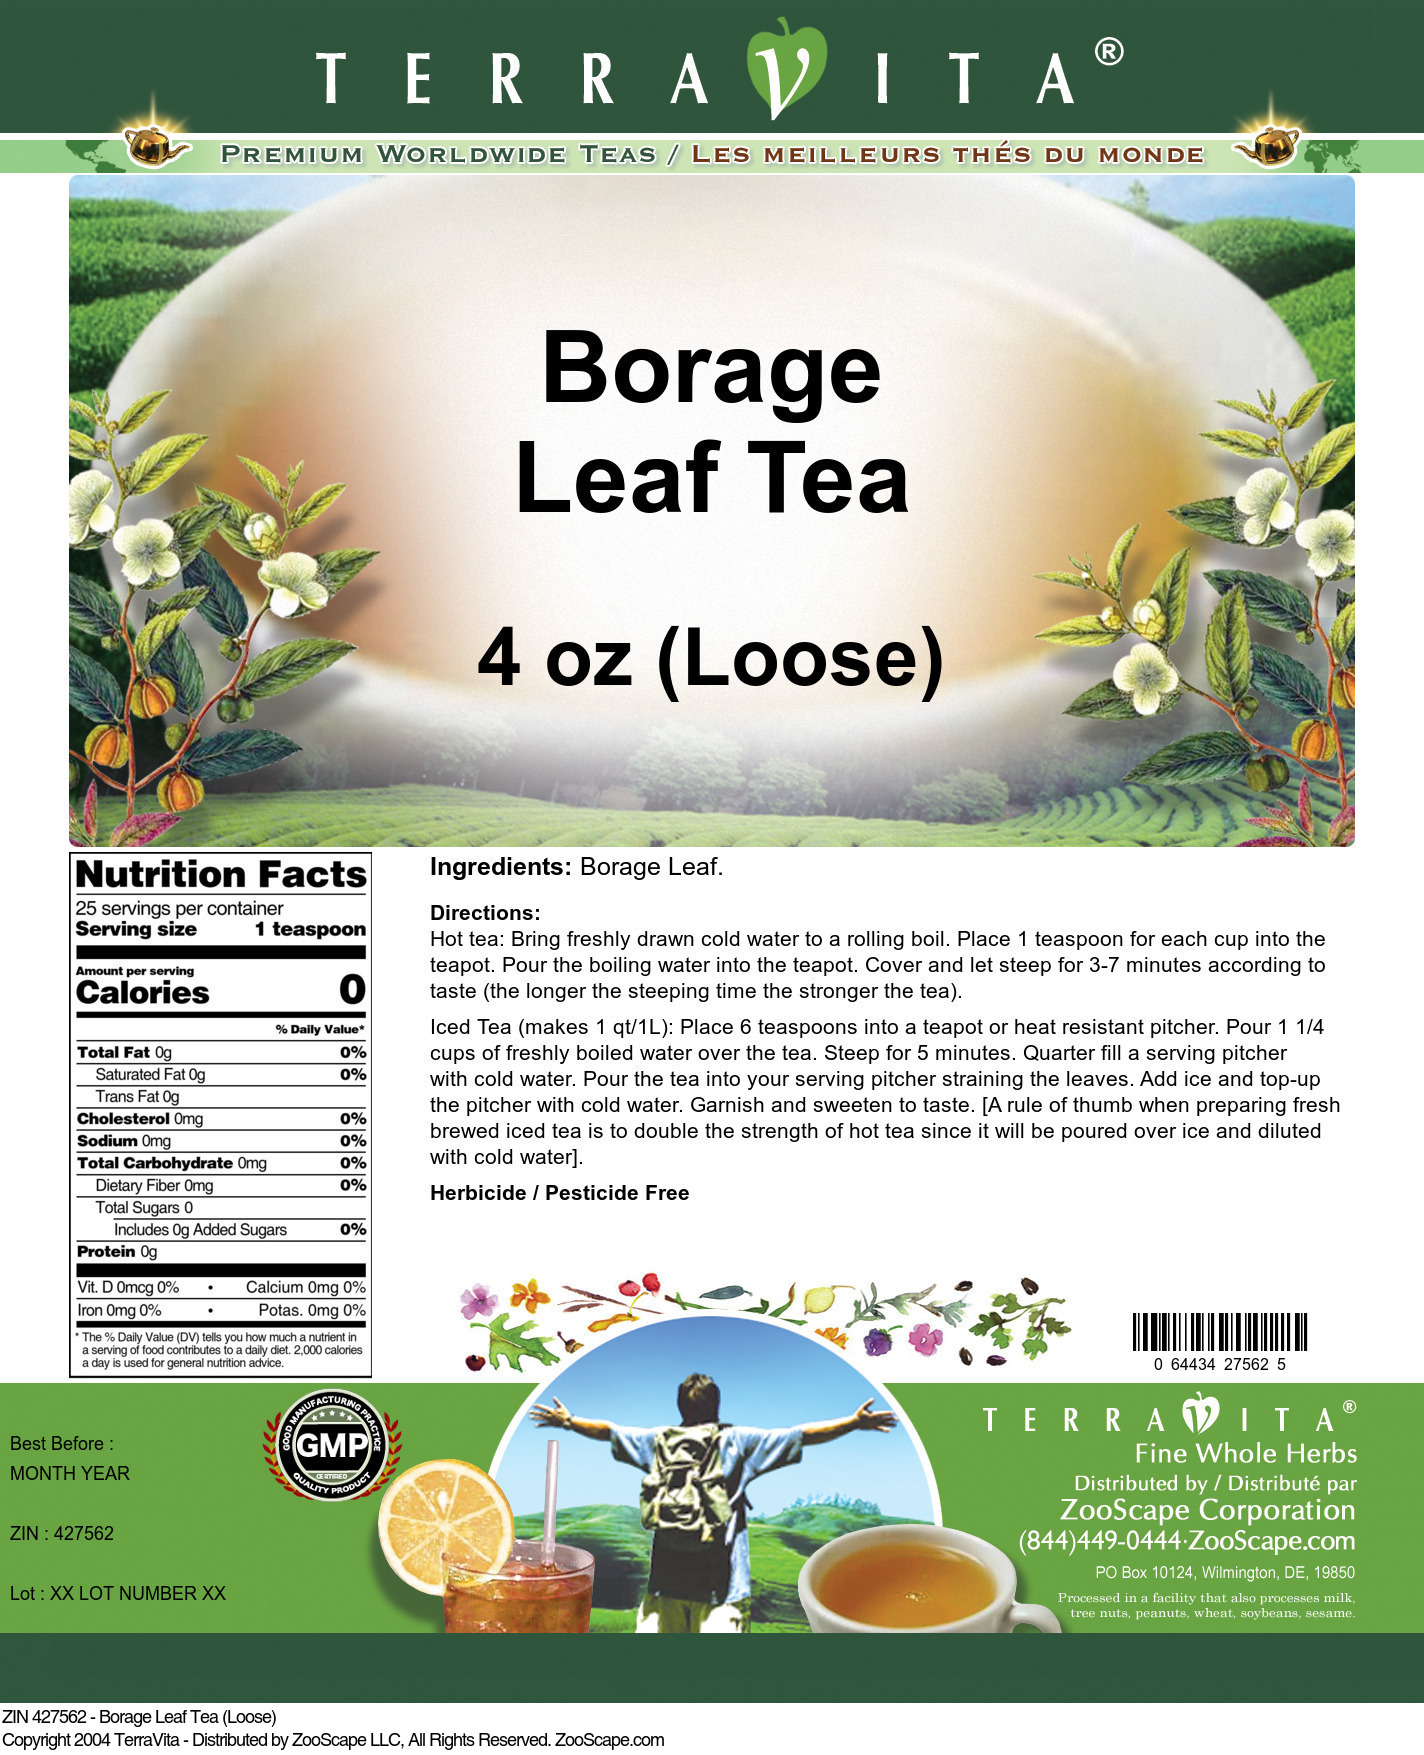 Borage Leaf Tea (Loose) - Label